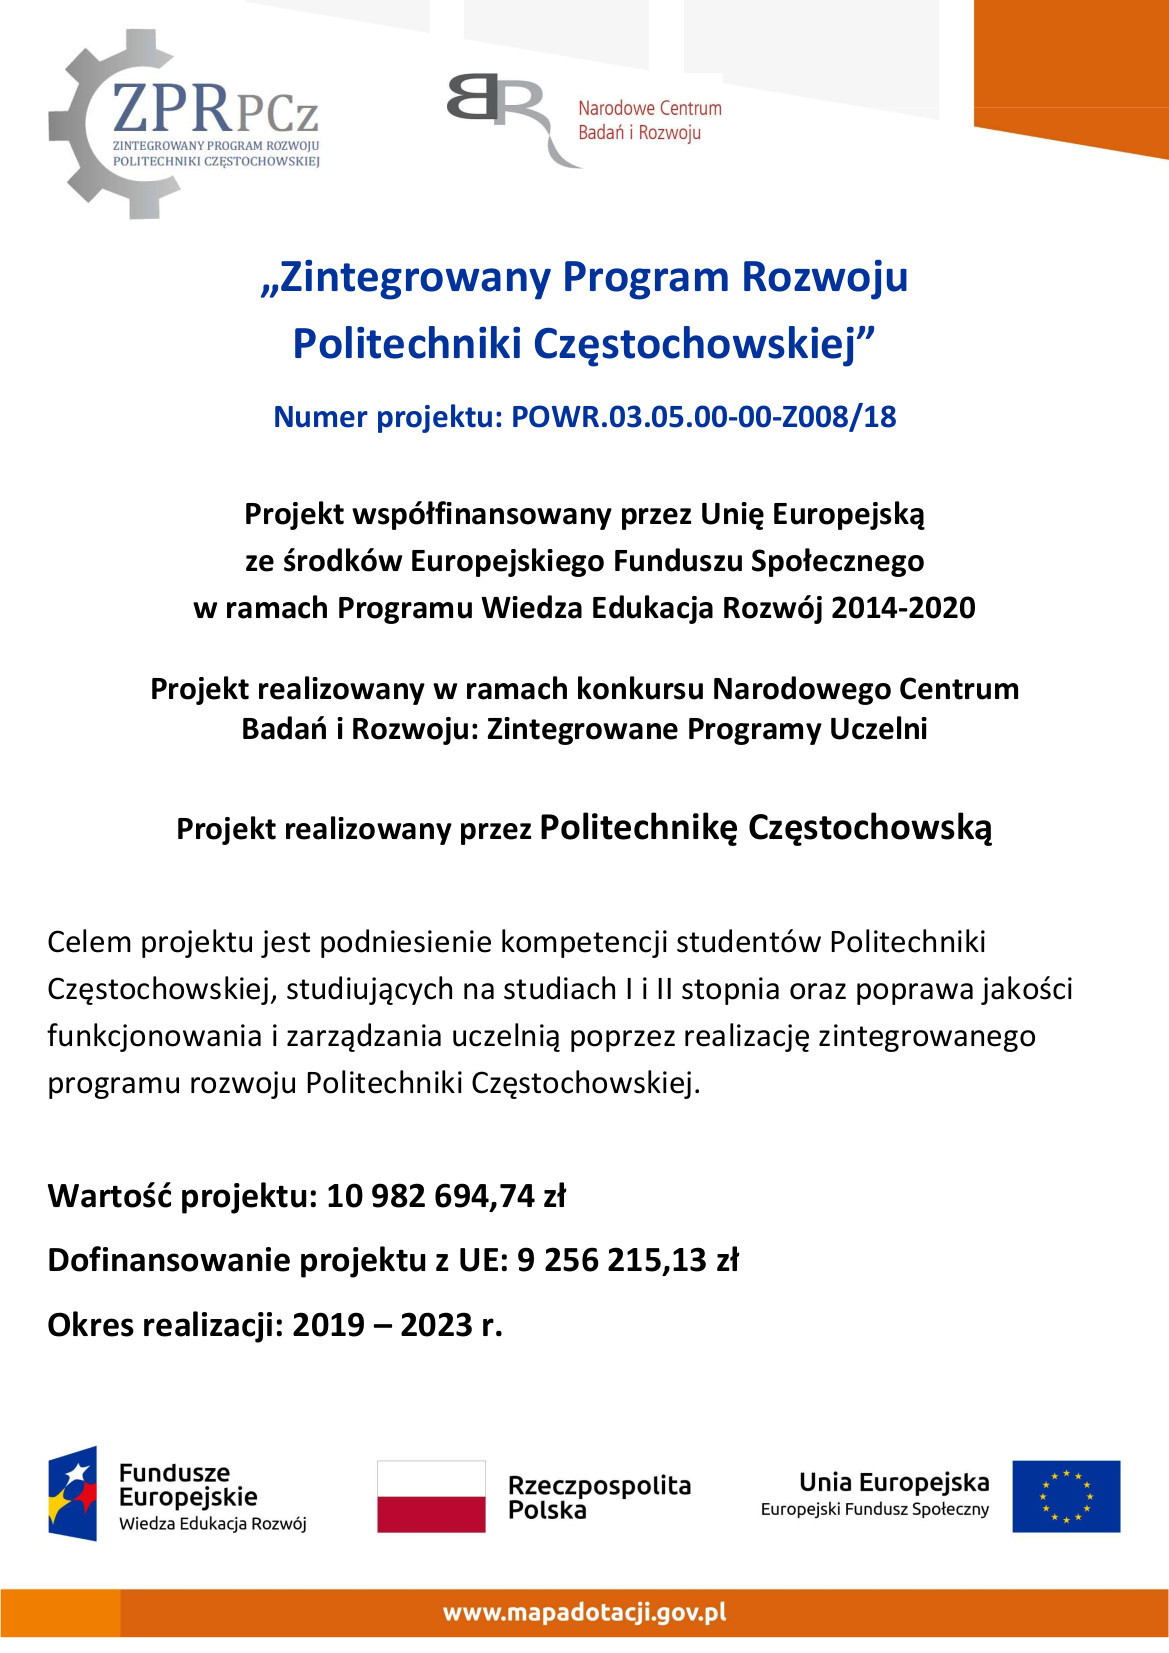 Zdjęcie przedstawia plakat informacyjny na temat projektu unijnego Zintegrowany Program Rozwoju Politechniki Częstochowskiej